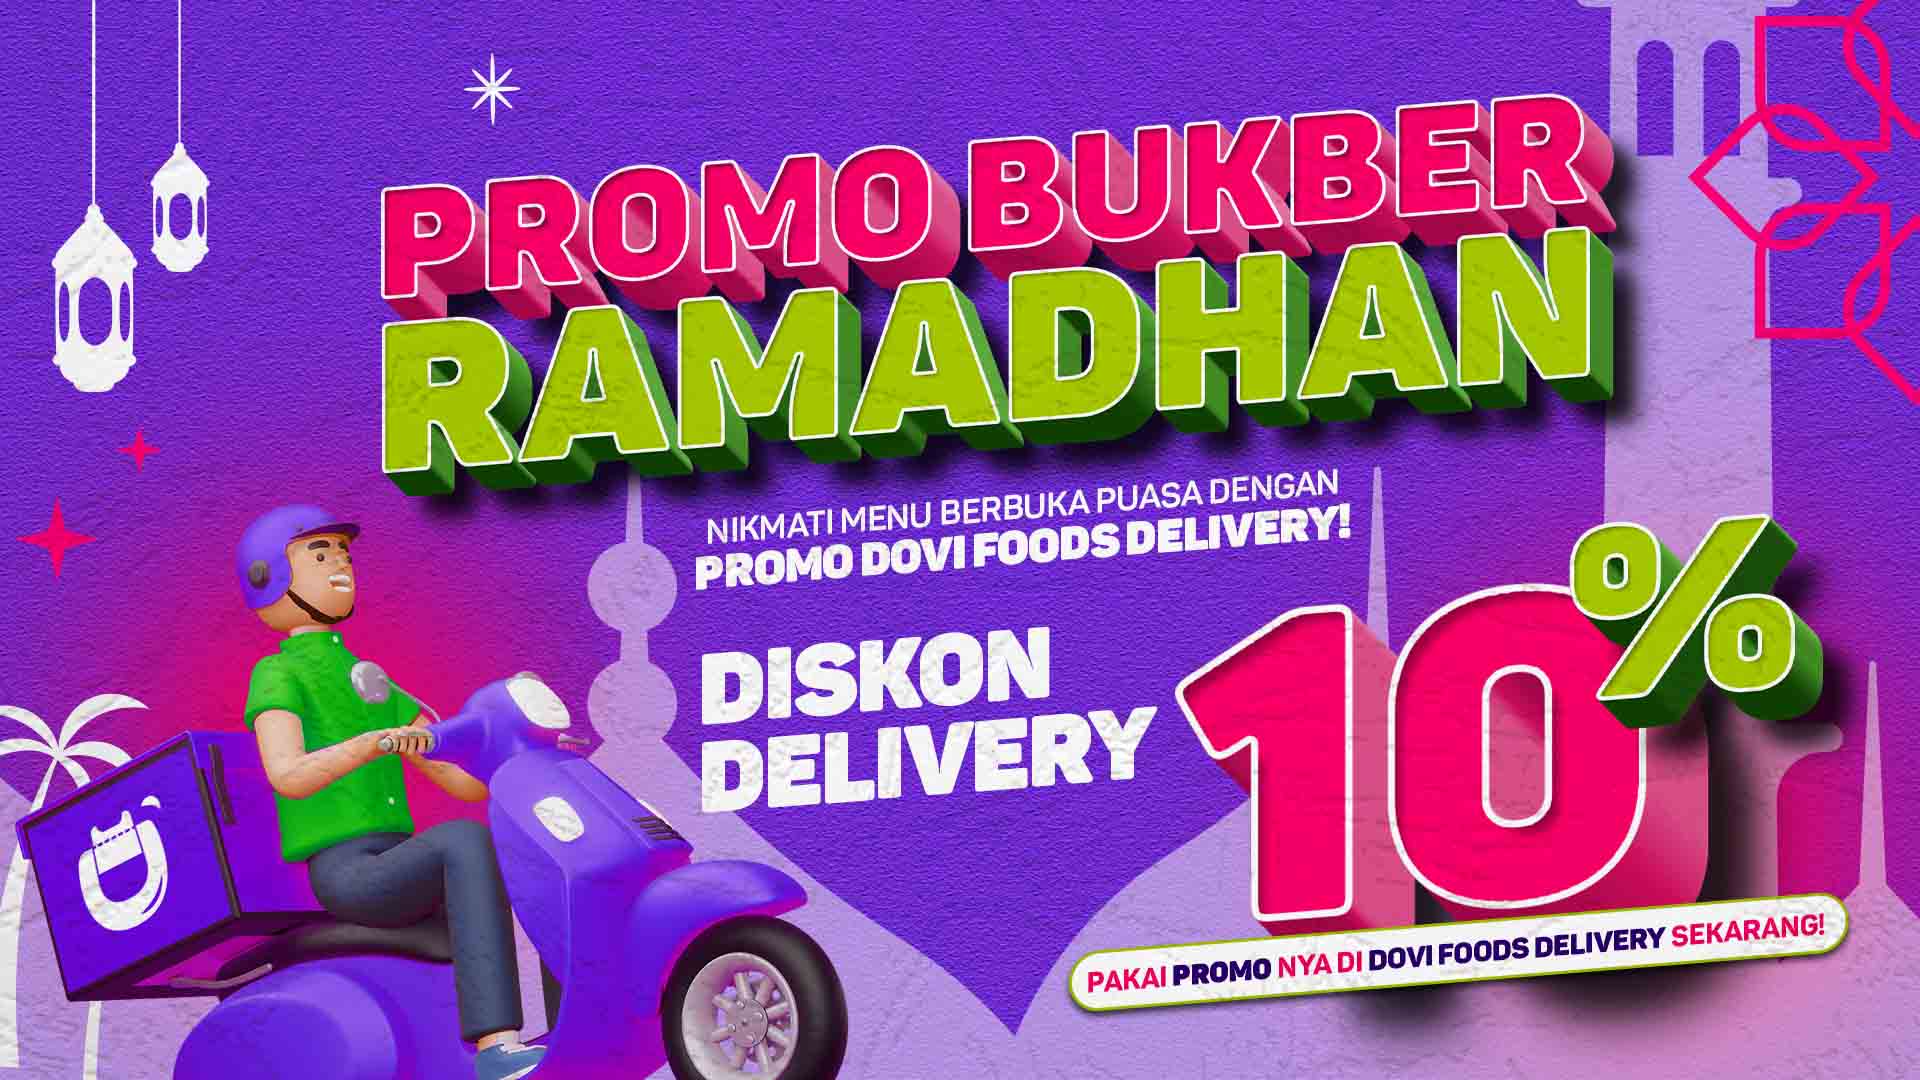 Bukber Hemat dengan Promo Bukber Ramadhan DOVI Foods Delivery!